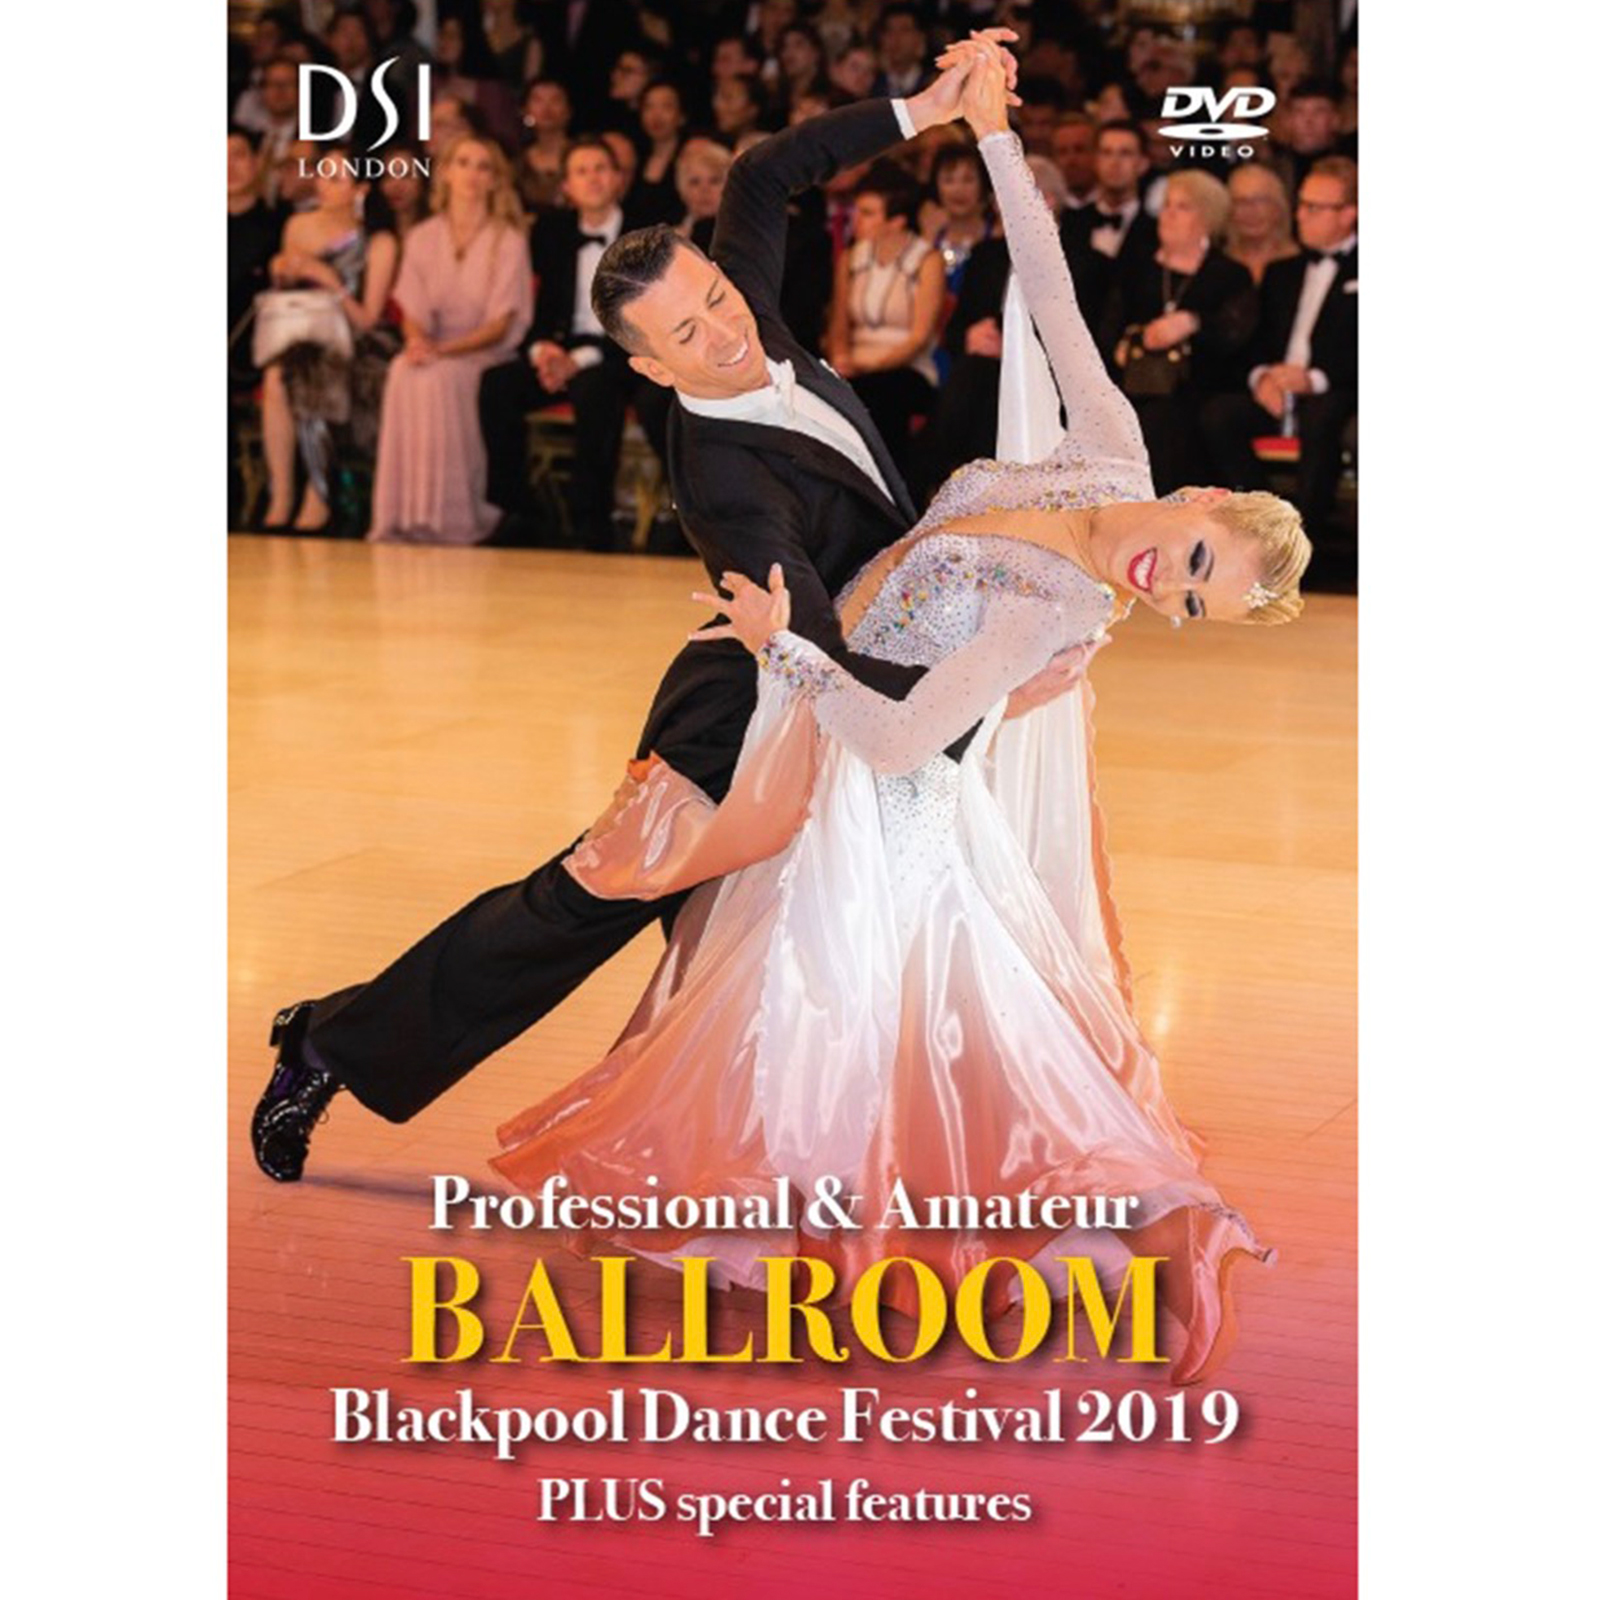 Buy Blackpool Dance Festival Ballroom